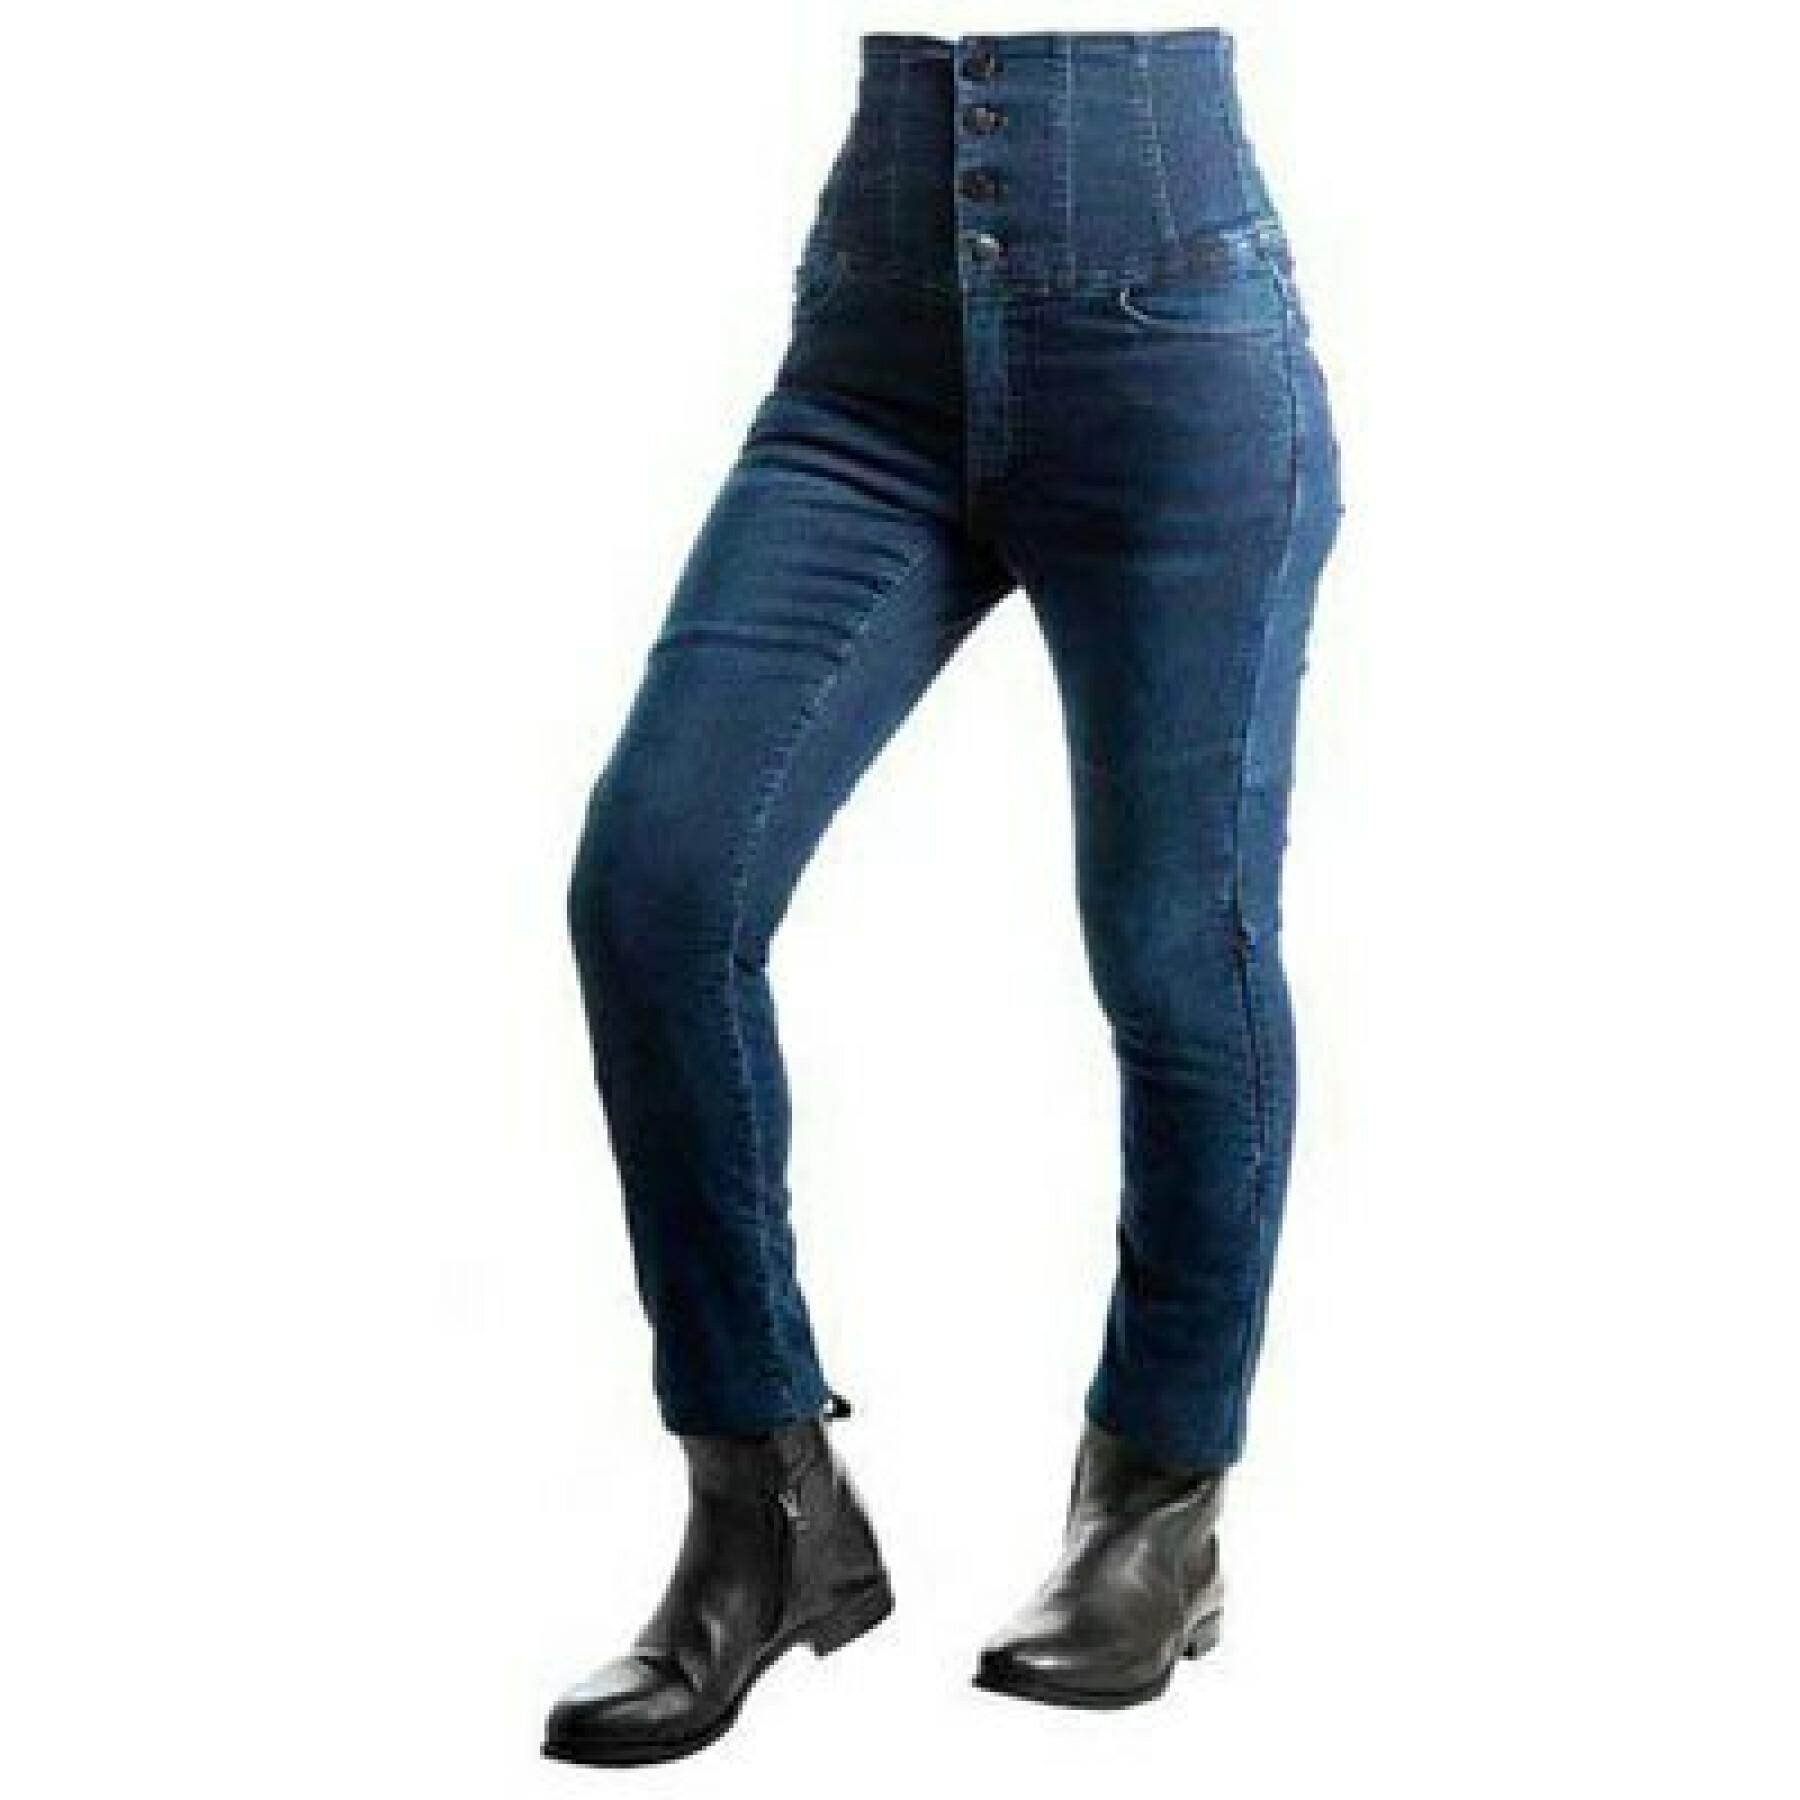 Motorrad-Jeans für Frauen Overlap Evy